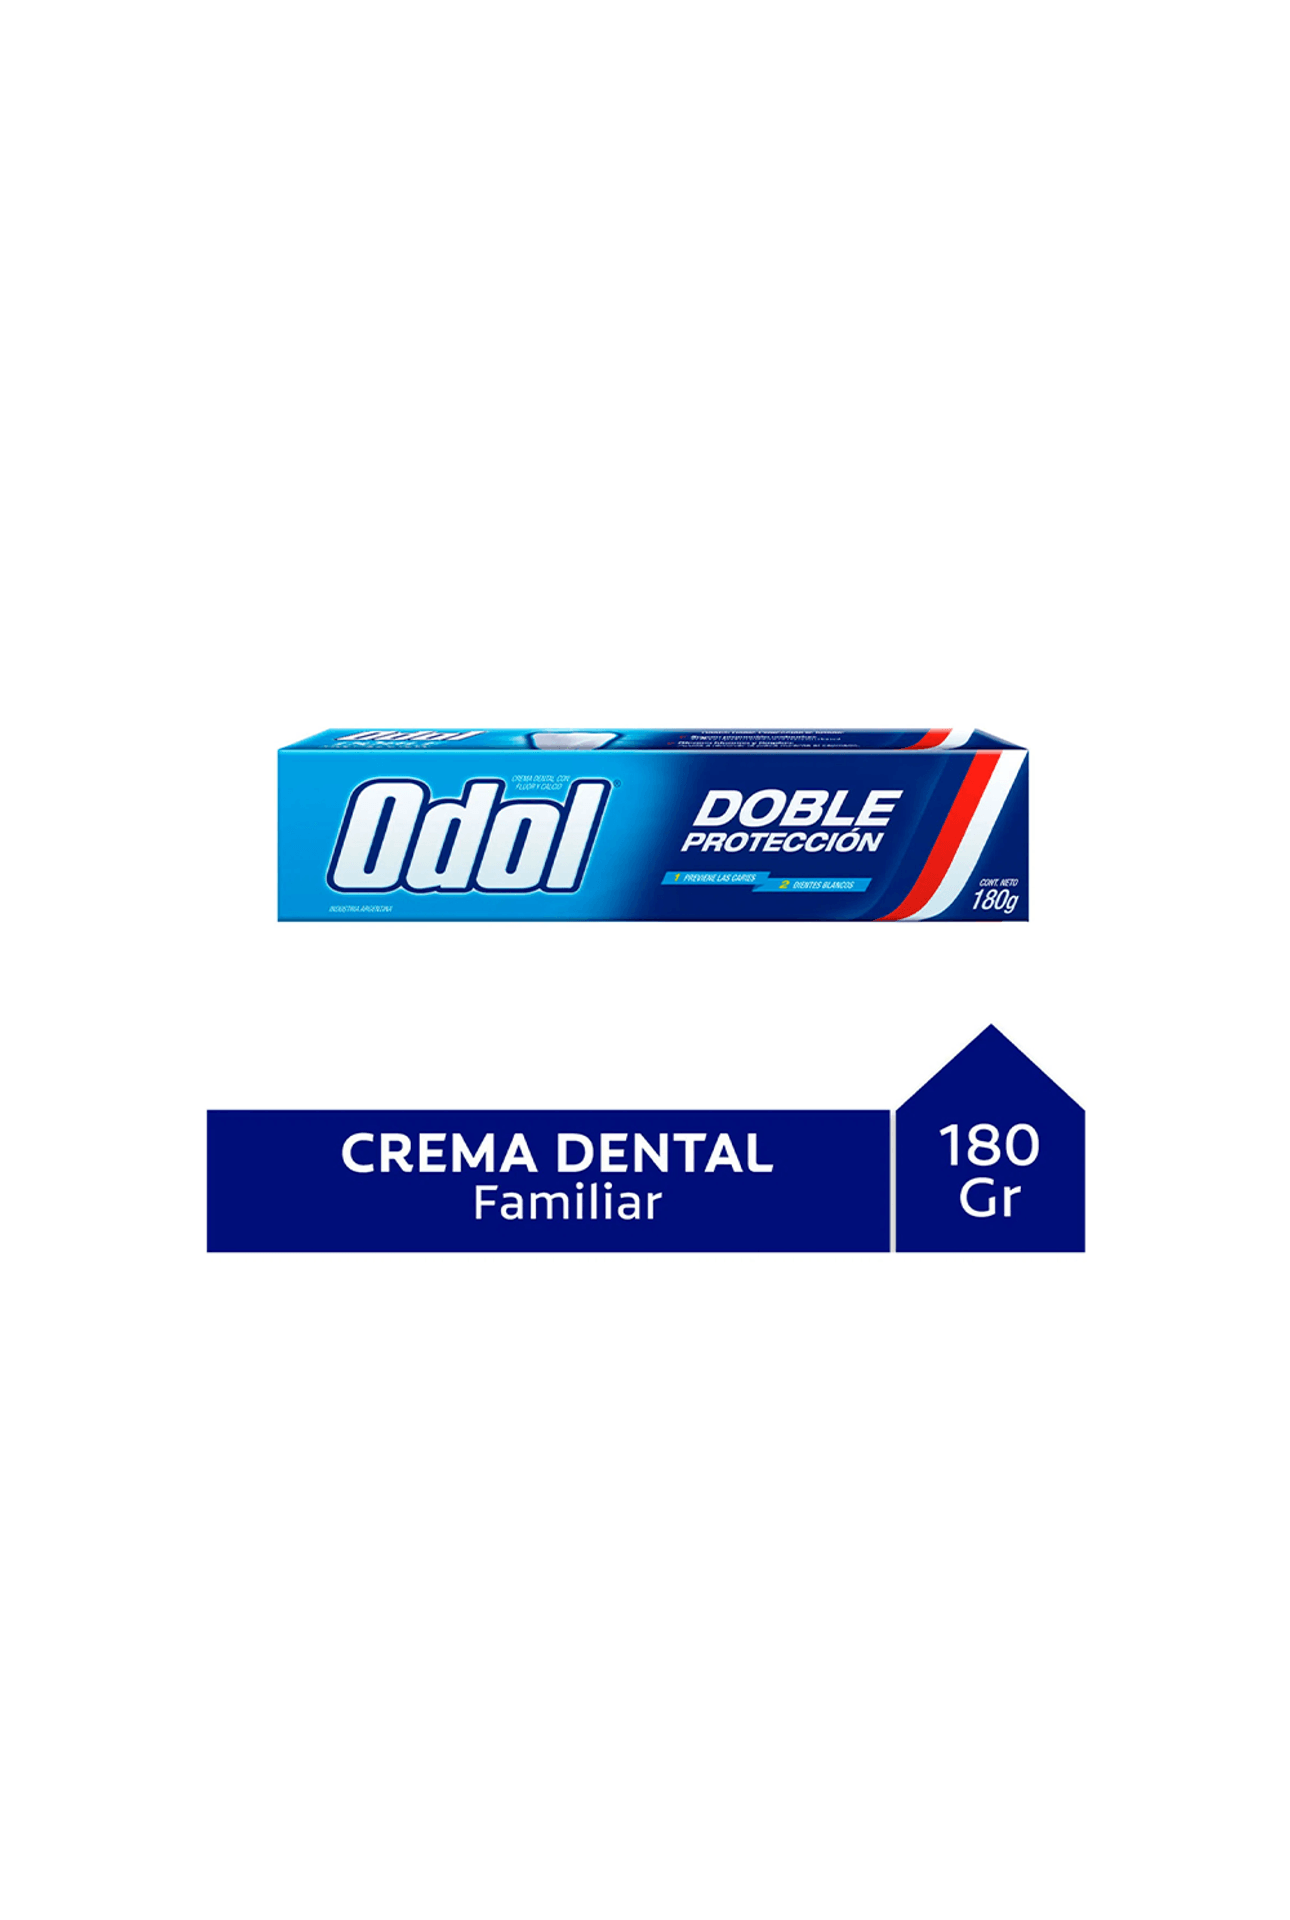 Odol-Crema-Dental-Odol-Doble-Proteccion-x-180-gr-7509546687278_img1